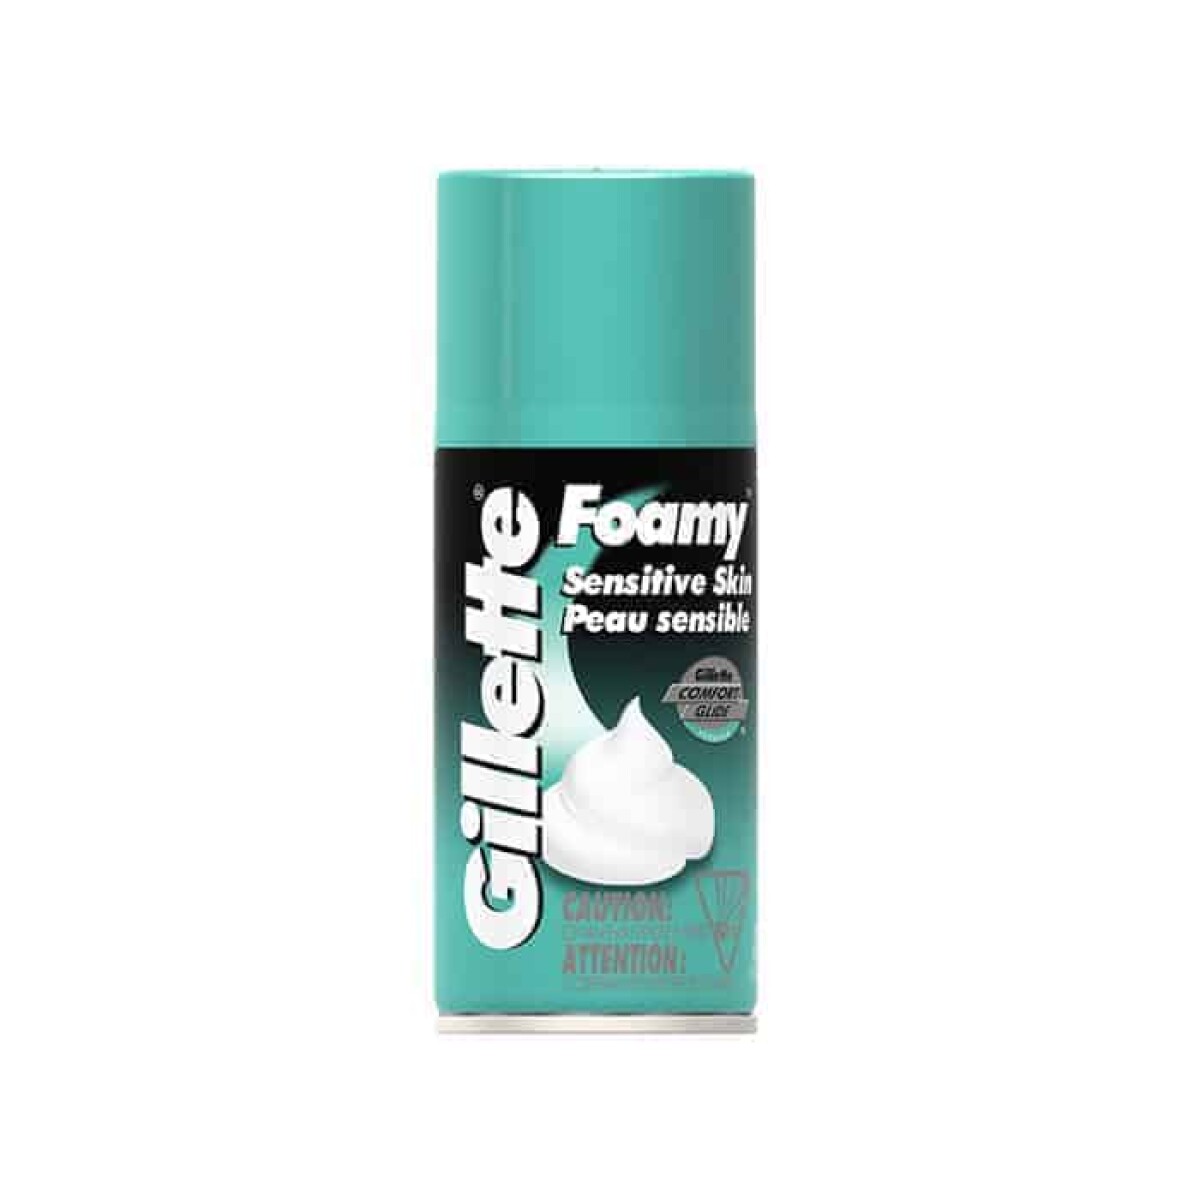 Gillette Foamy 312 Grs Sensitive 